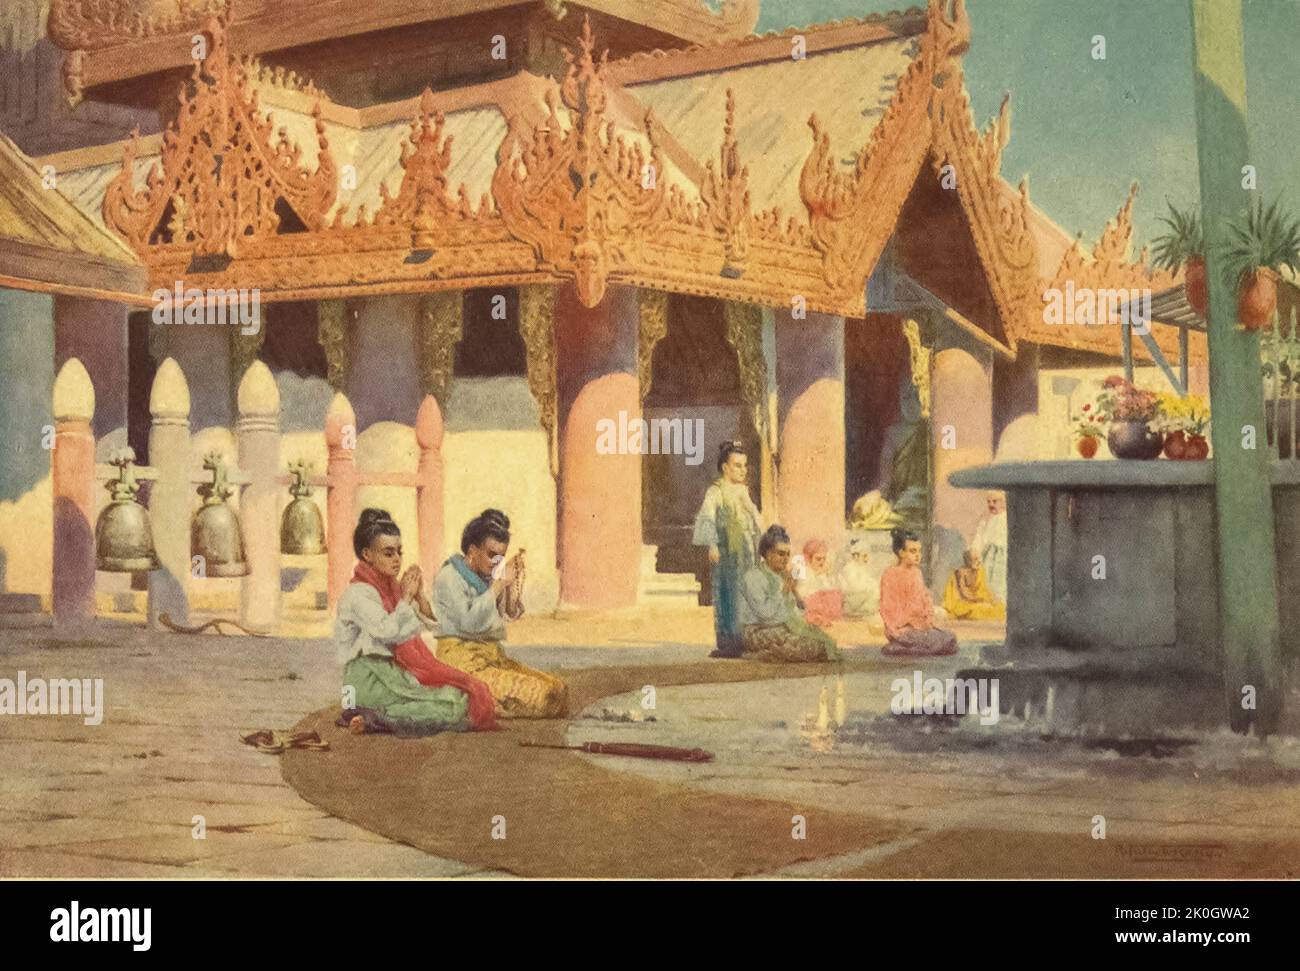 Preghiera sulla piattaforma Pagoda — Prome (AKA Pyay Pyè ) dal libro ' Burma ' dipinto e descritto da Kelly, R. Talbot (Robert Talbot), 1861-1934 Data di pubblicazione 1905 Editore Londra : Adam e Charles Black Foto Stock